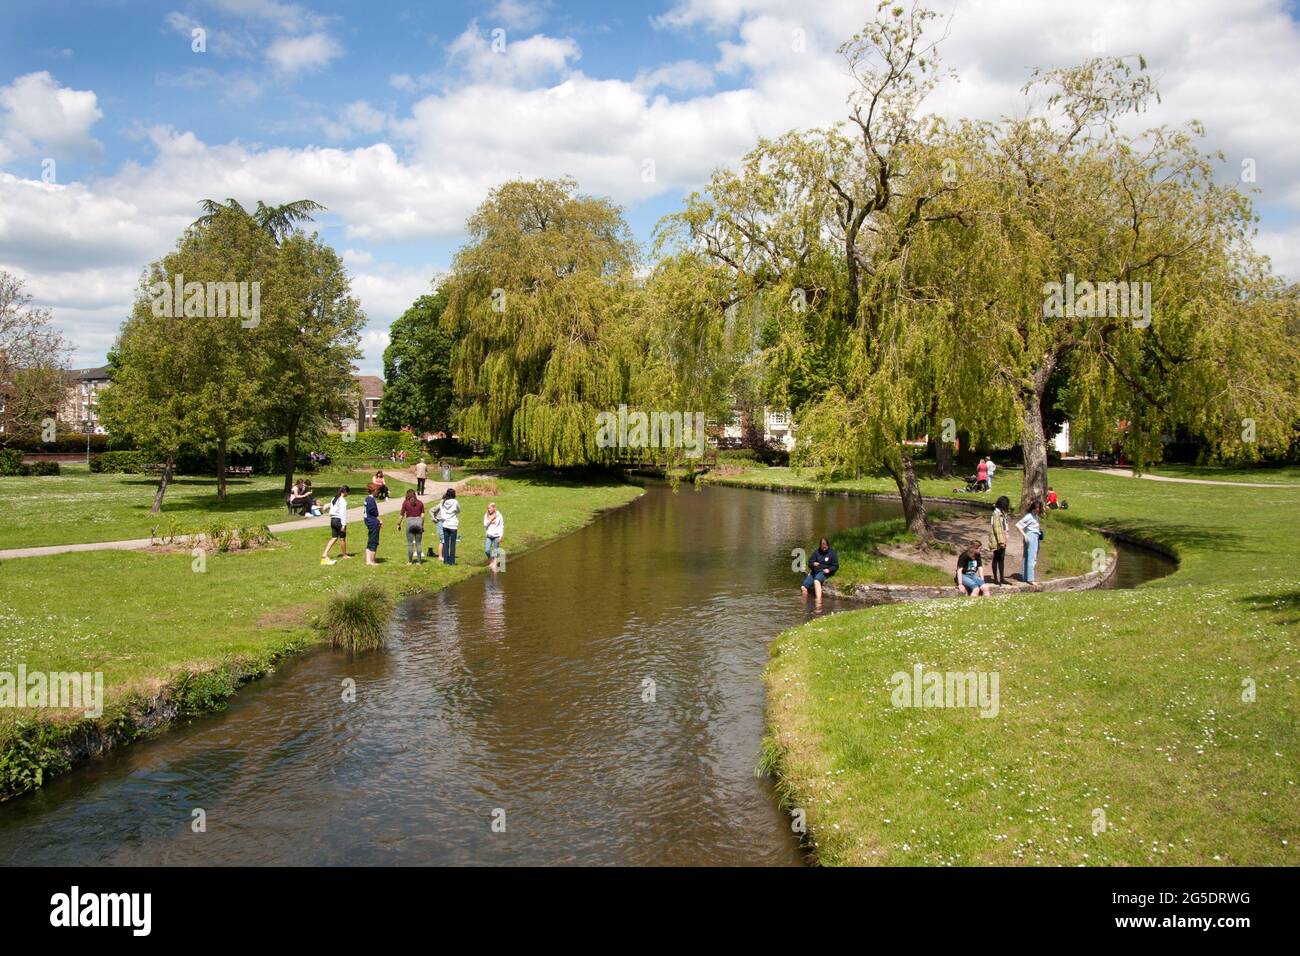 Personnes se baignant dans la rivière Avon, parc Queen Elizabeth, Salisbury, Wiltshire, Angleterre Banque D'Images